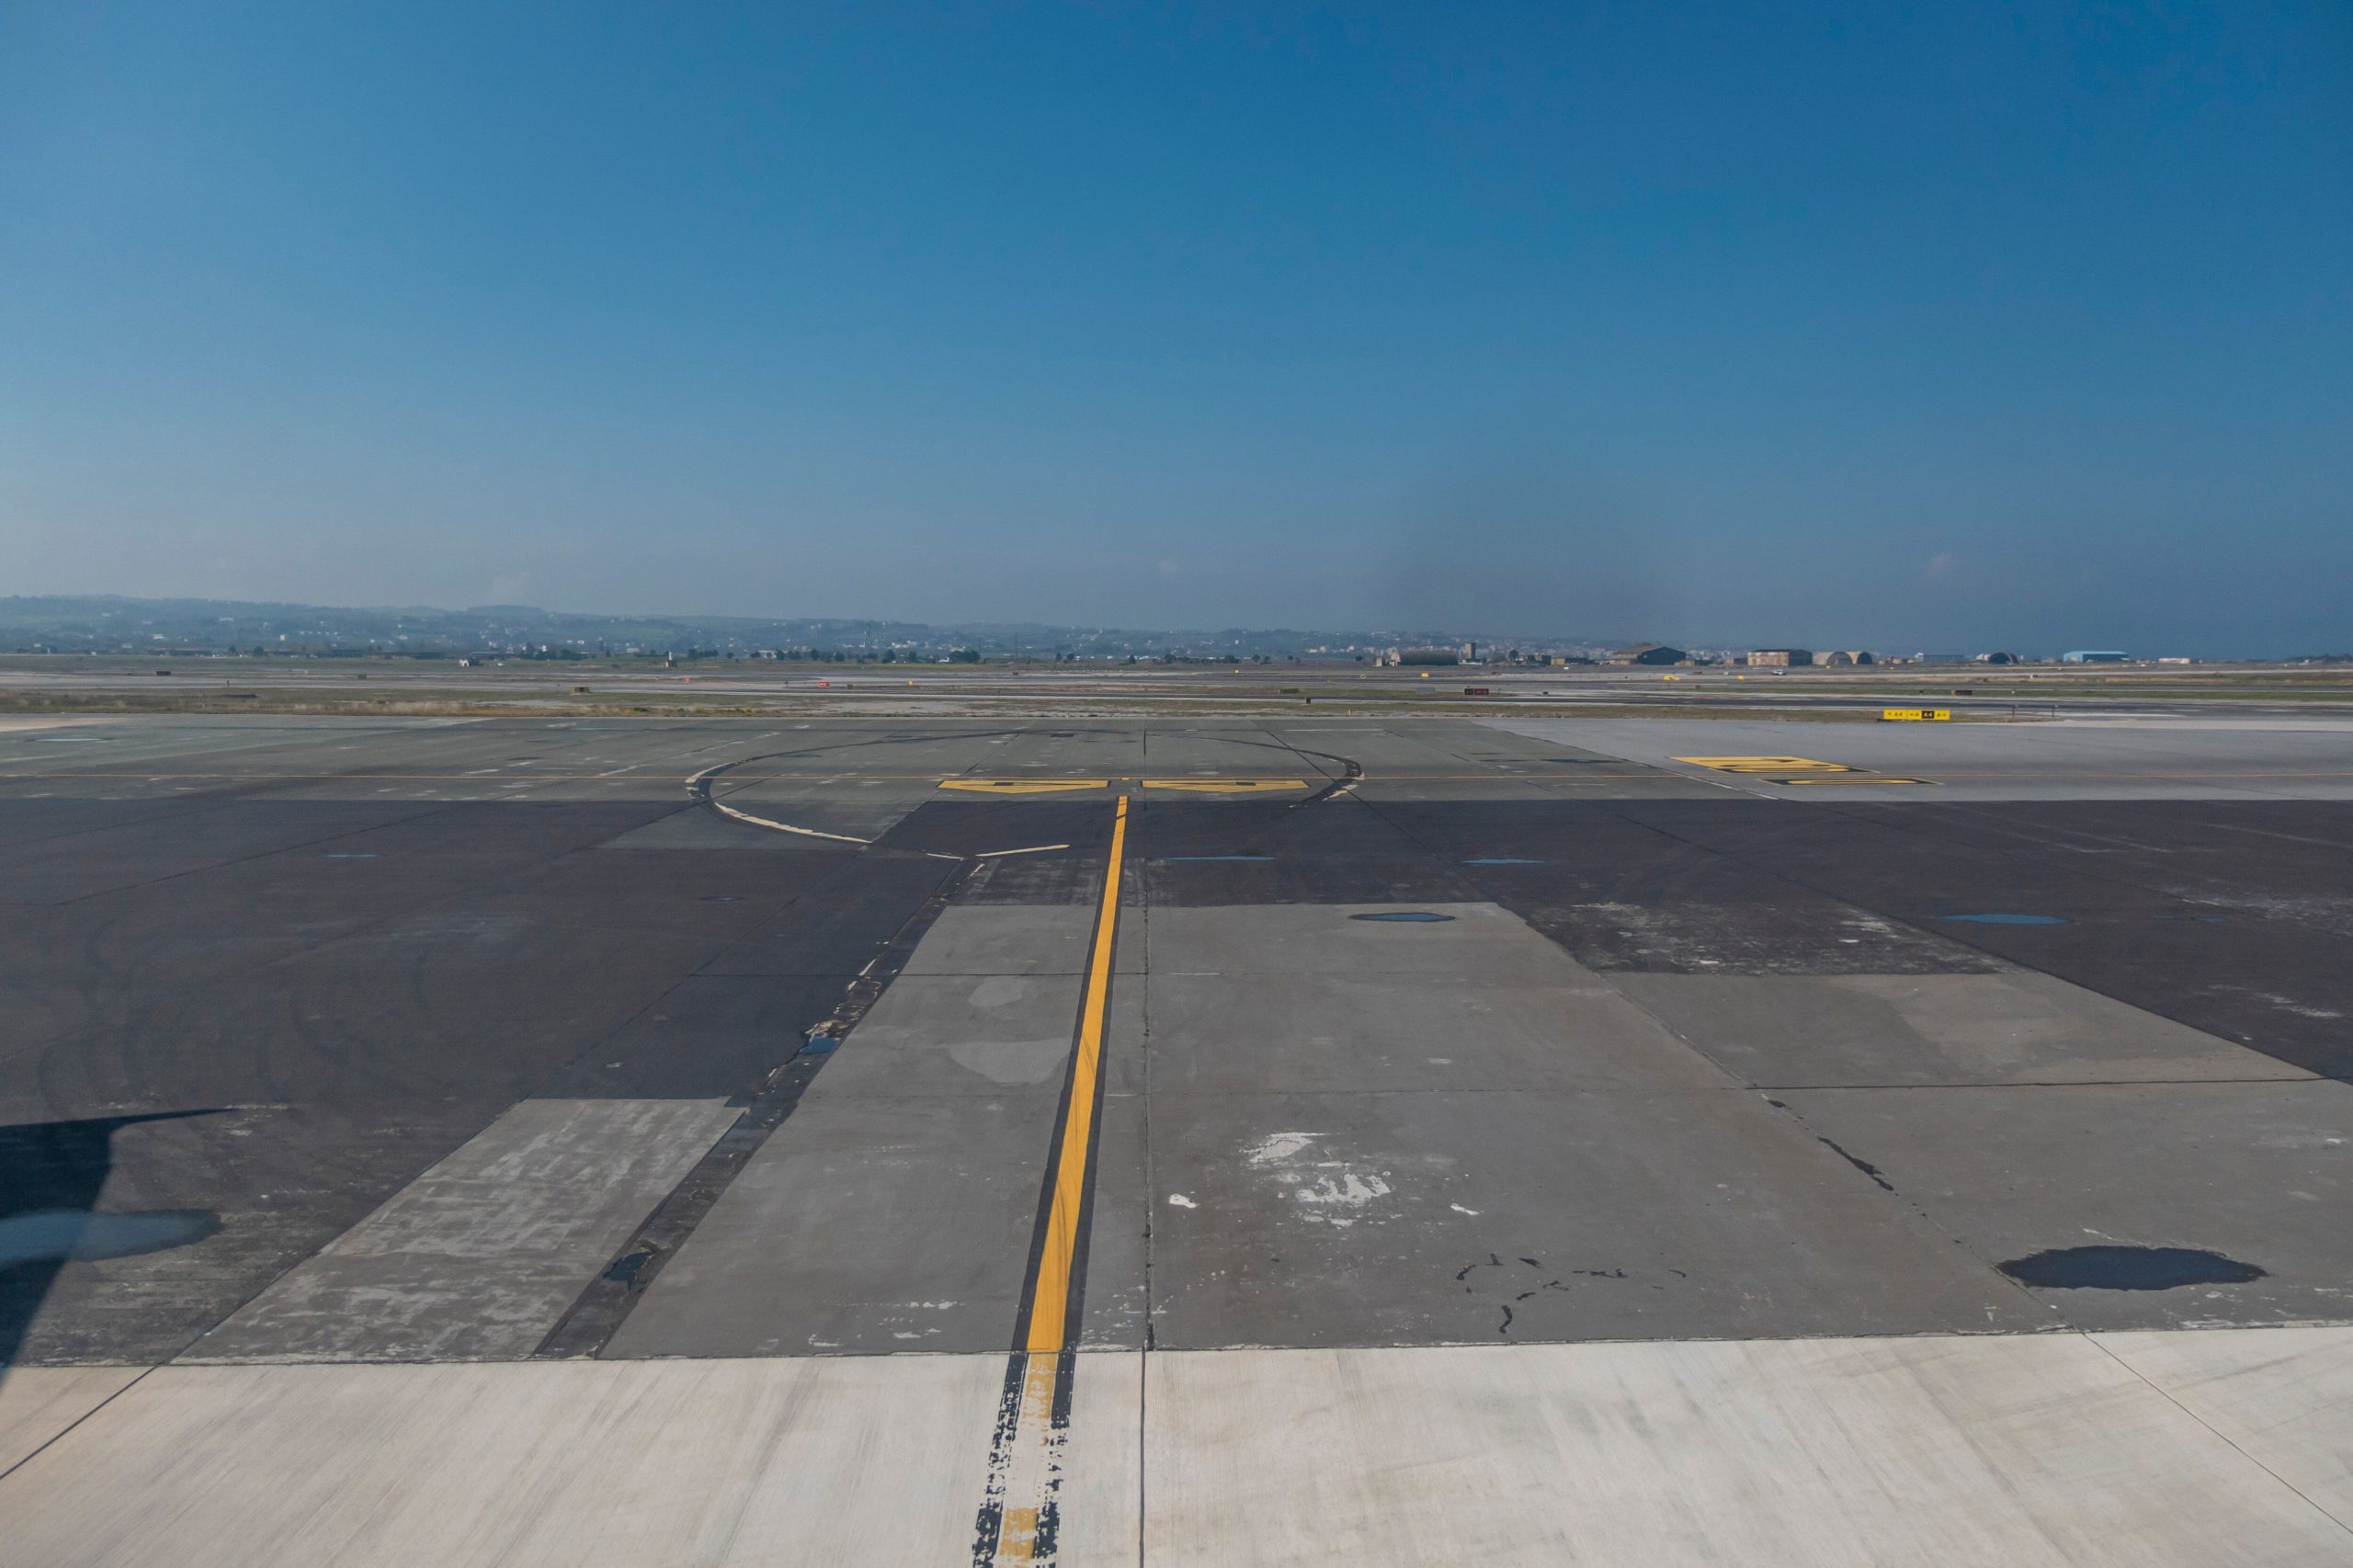 Έκτακτη προσγείωση αεροσκάφους στο αεροδρόμιο "Μακεδονία" - Τι συνέβη με δύο Ρώσους επιβάτες | HuffPost Greece ΚΟΙΝΩΝΙΑ